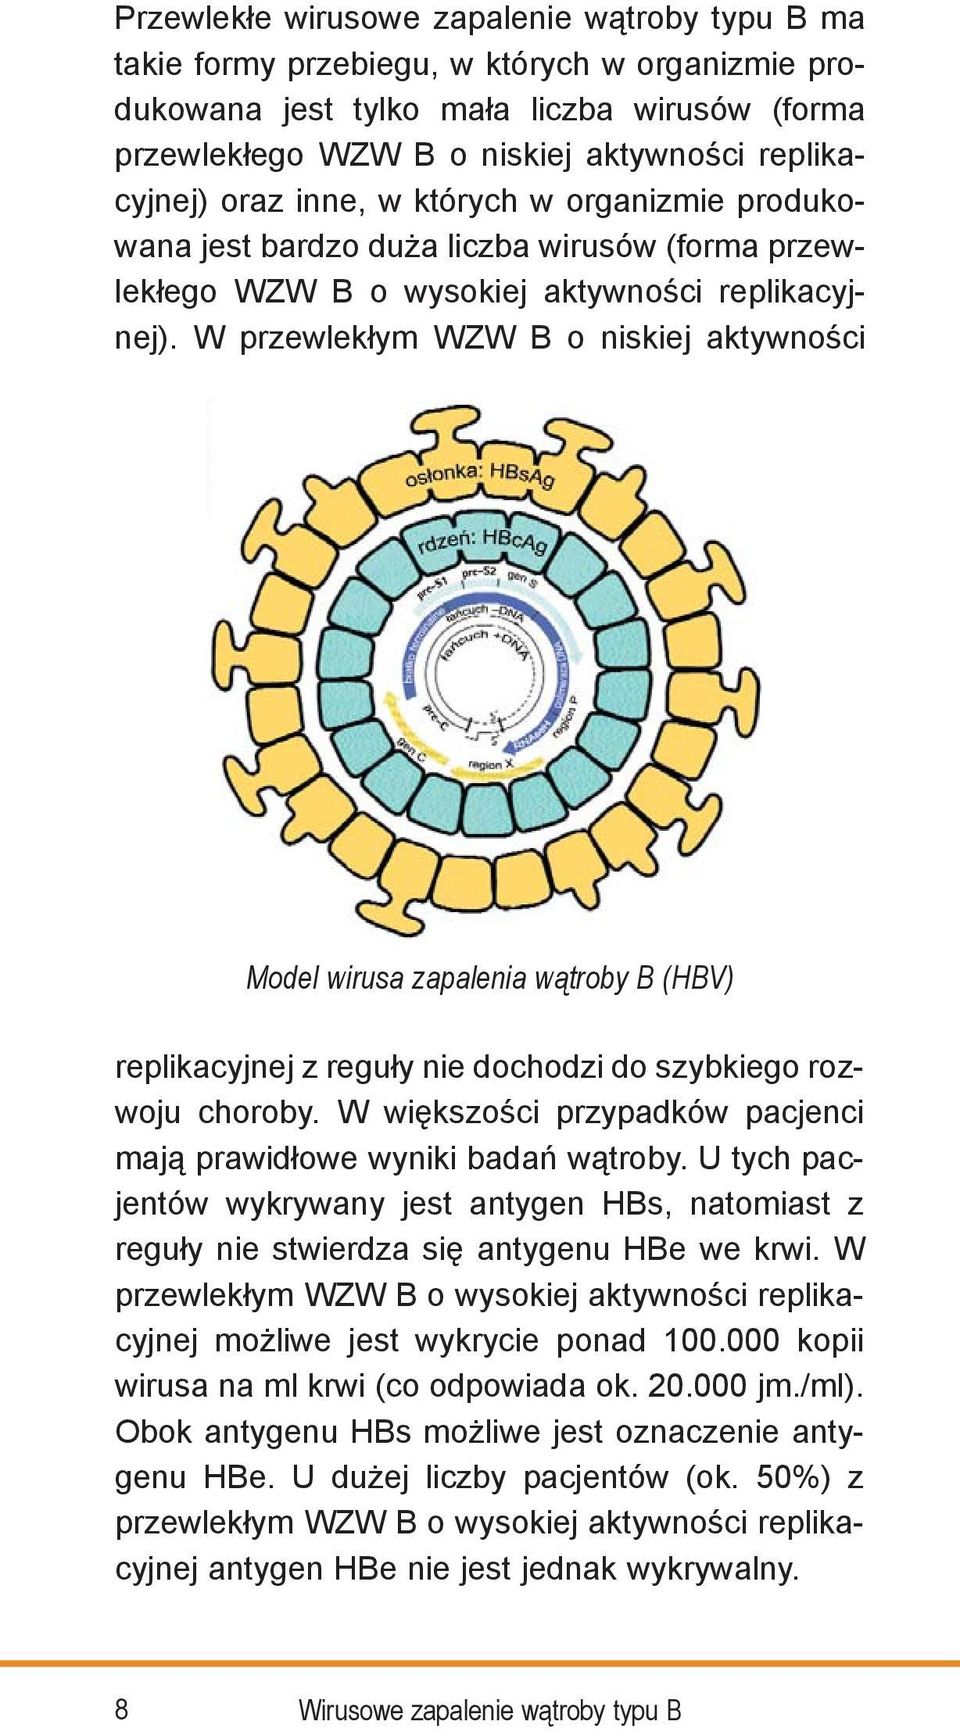 W przewlekłym WZW B o niskiej aktywności Model wirusa zapalenia wątroby B (HBV) replikacyjnej z reguły nie dochodzi do szybkiego rozwoju choroby.